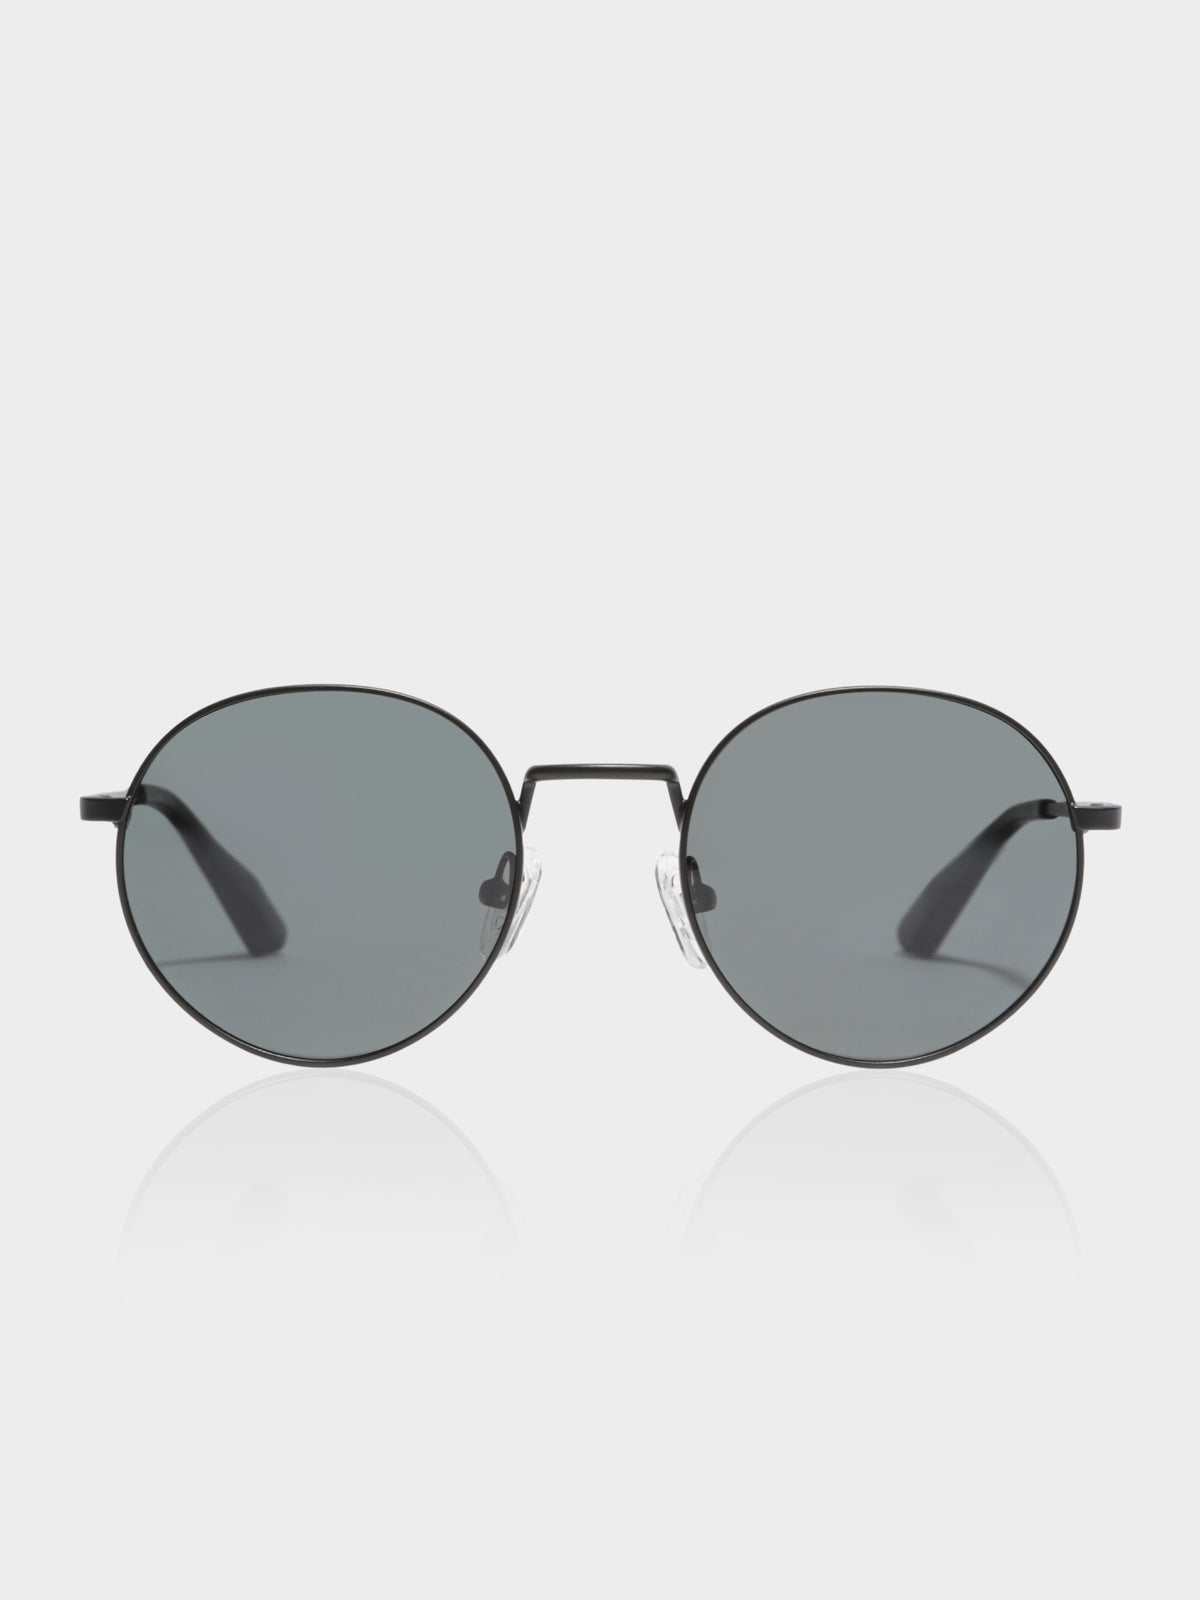 LON Polarised Sunglasses in Matte Black &amp; Grey